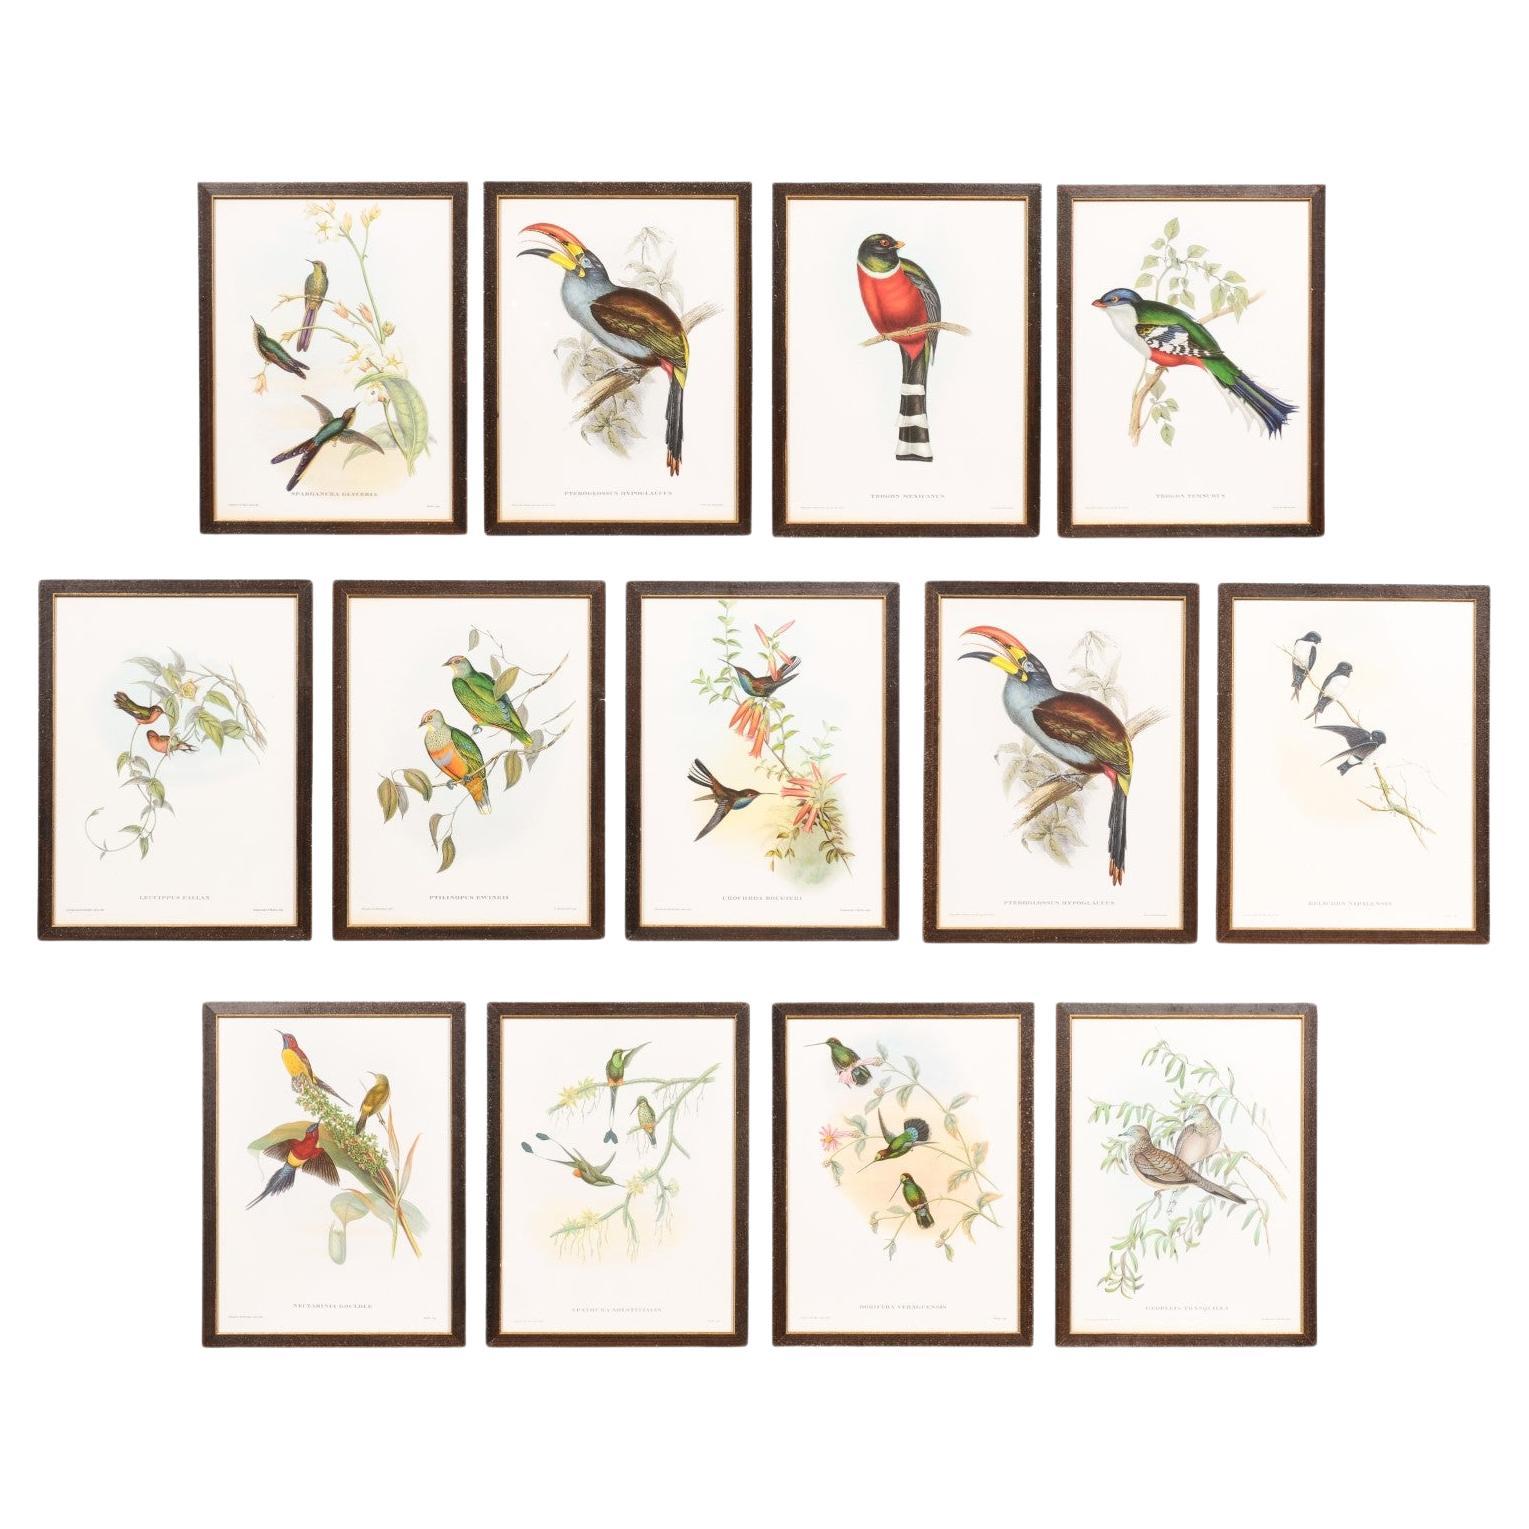 Impressions d'oiseaux tropicaux dans des cadres en bois personnalisés de John Gould, 13 vendues chacune